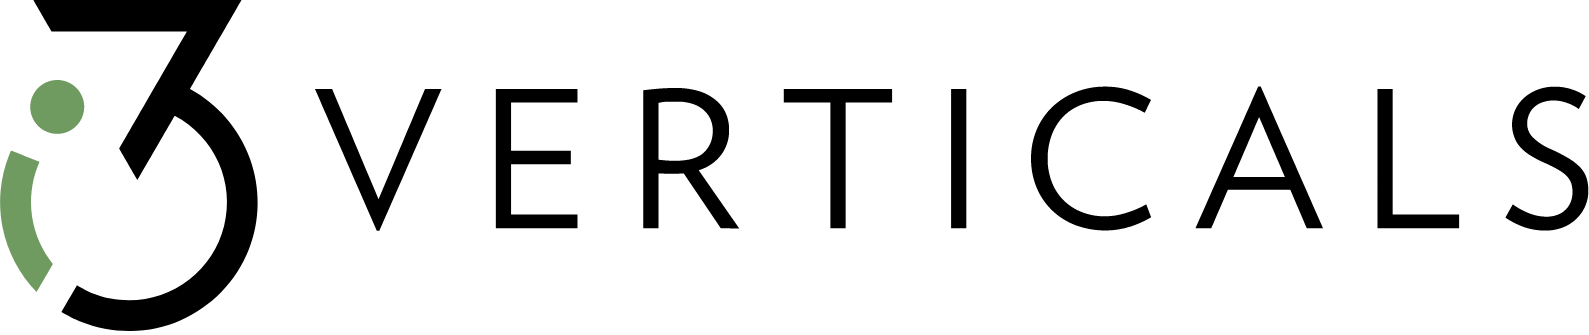 i3 Verticals logo large (transparent PNG)